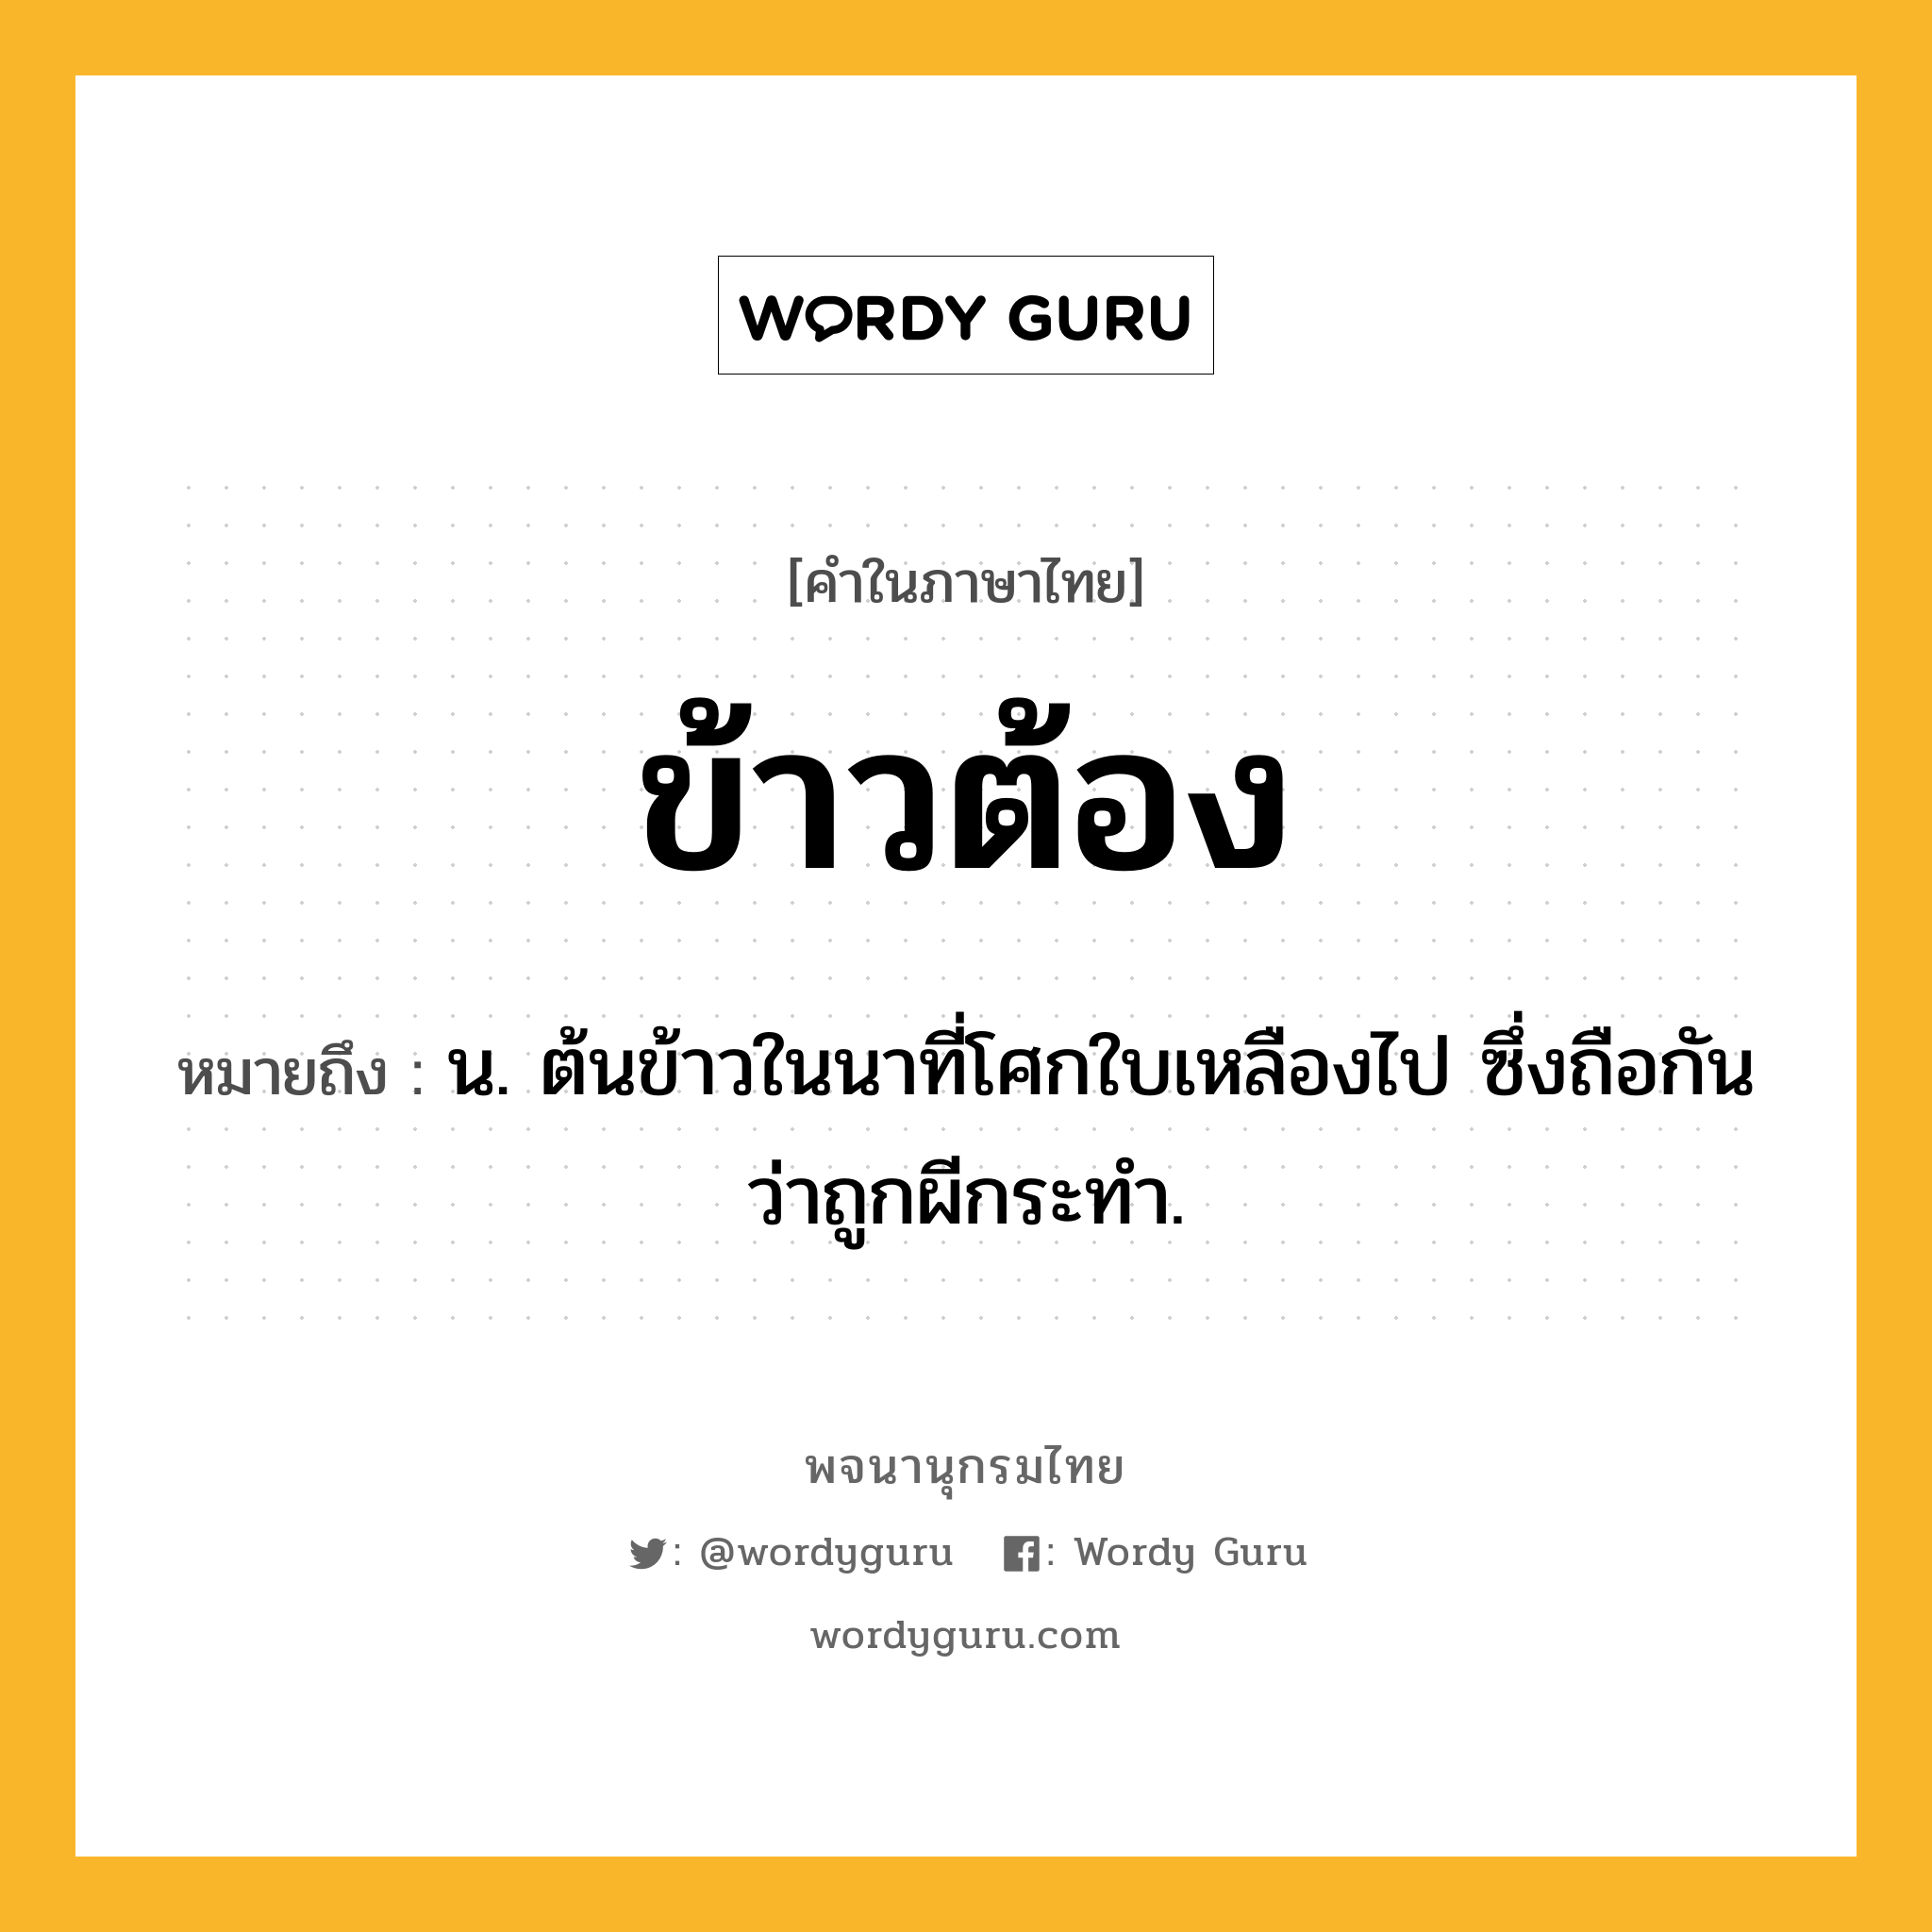 ข้าวต้อง ความหมาย หมายถึงอะไร?, คำในภาษาไทย ข้าวต้อง หมายถึง น. ต้นข้าวในนาที่โศกใบเหลืองไป ซึ่งถือกันว่าถูกผีกระทำ.